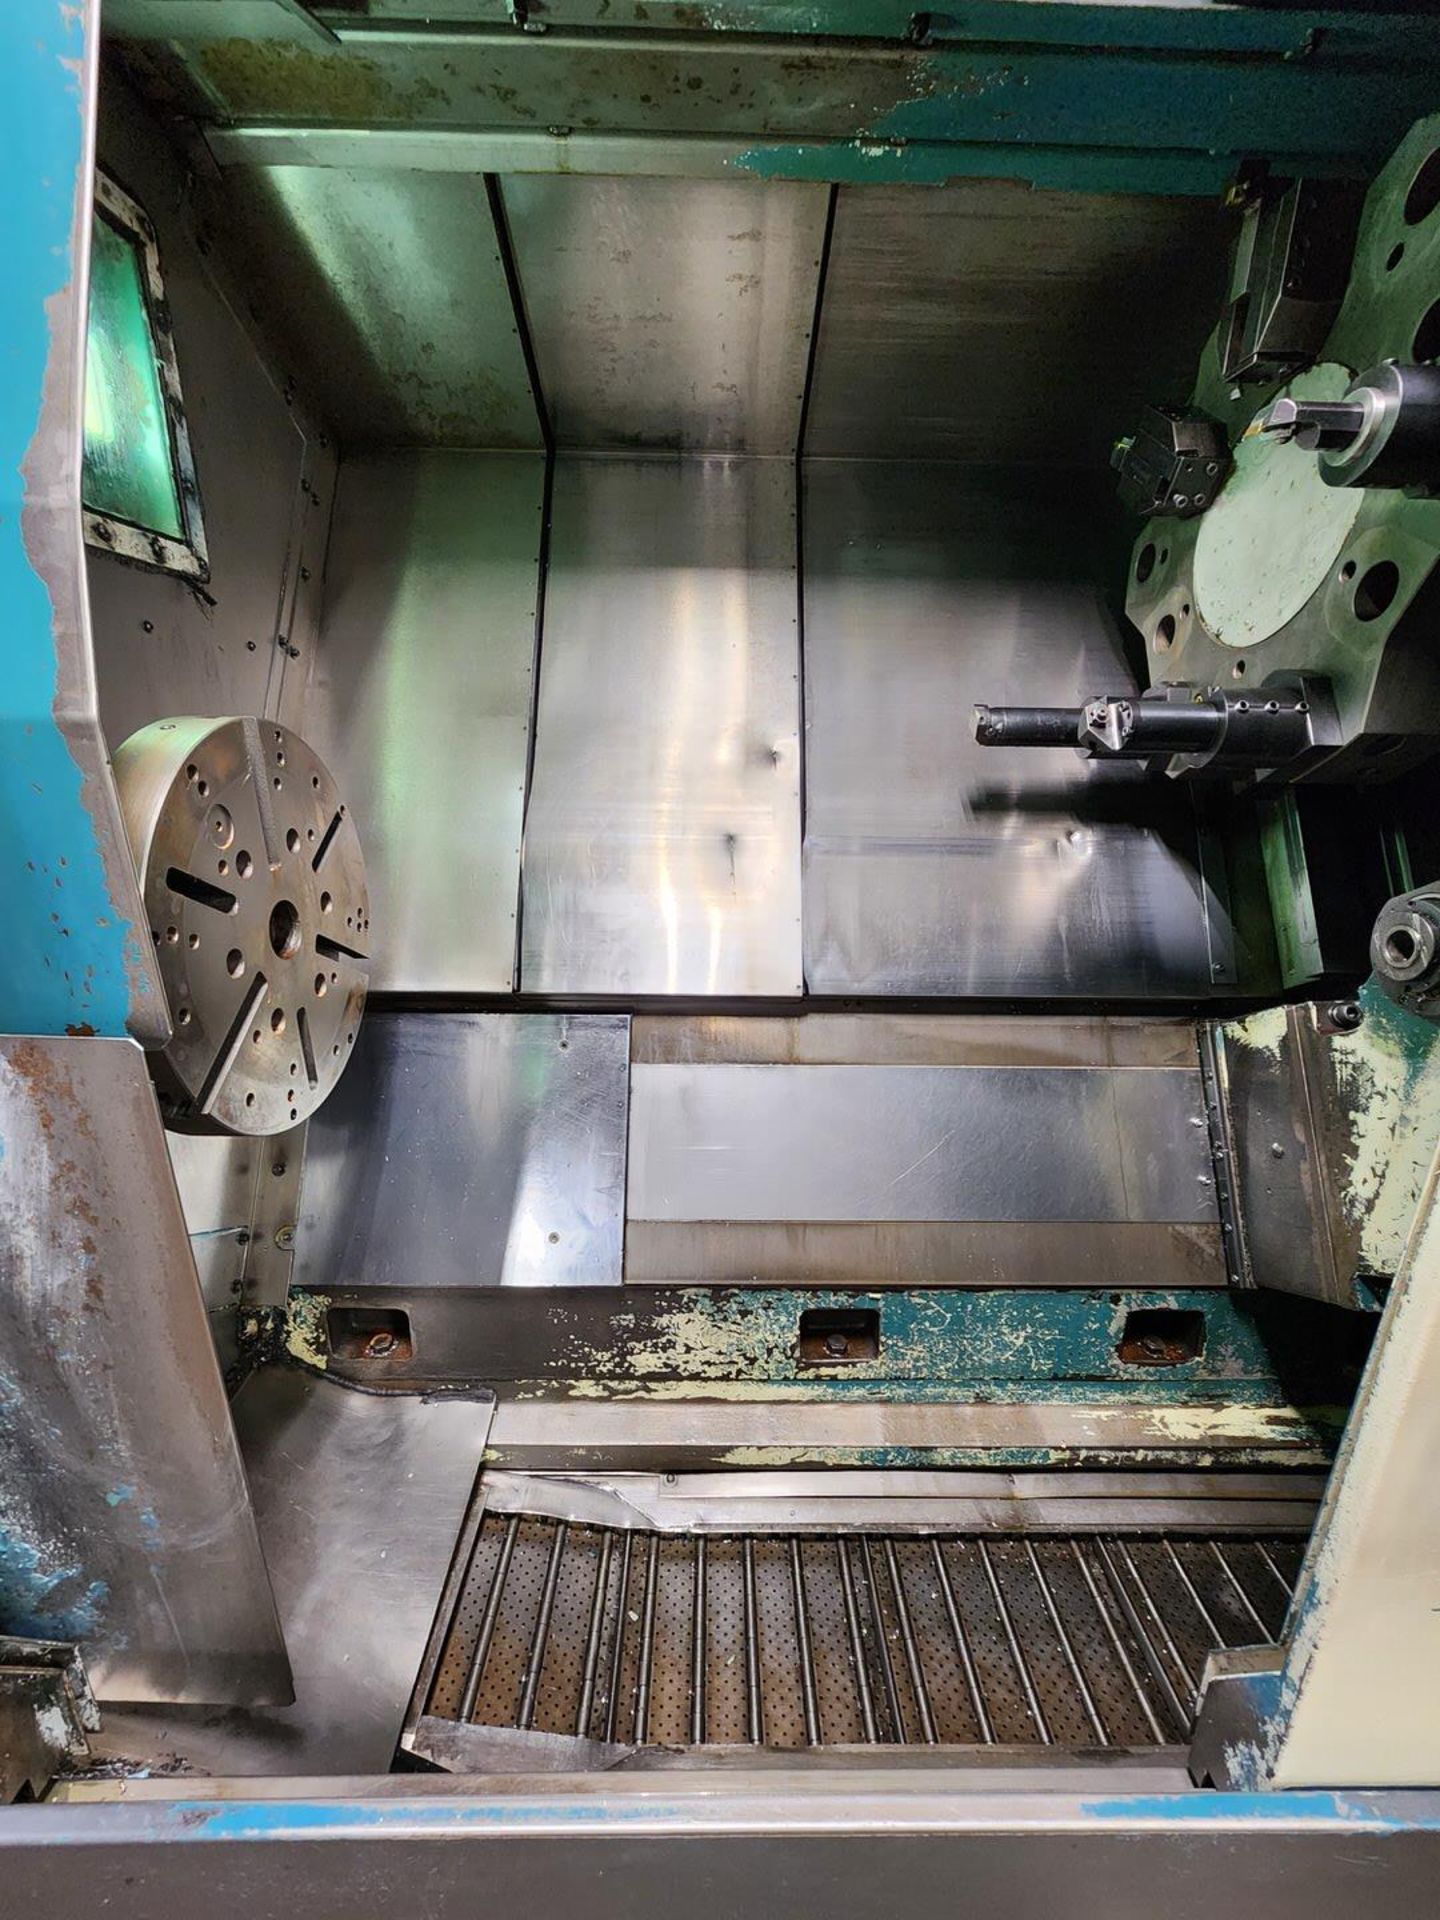 Nakamura Slant 3 CNC Turning Machine W/ Fanuc Controller, 12-Tool Turret Station (Asset# 1302204) - Image 5 of 17